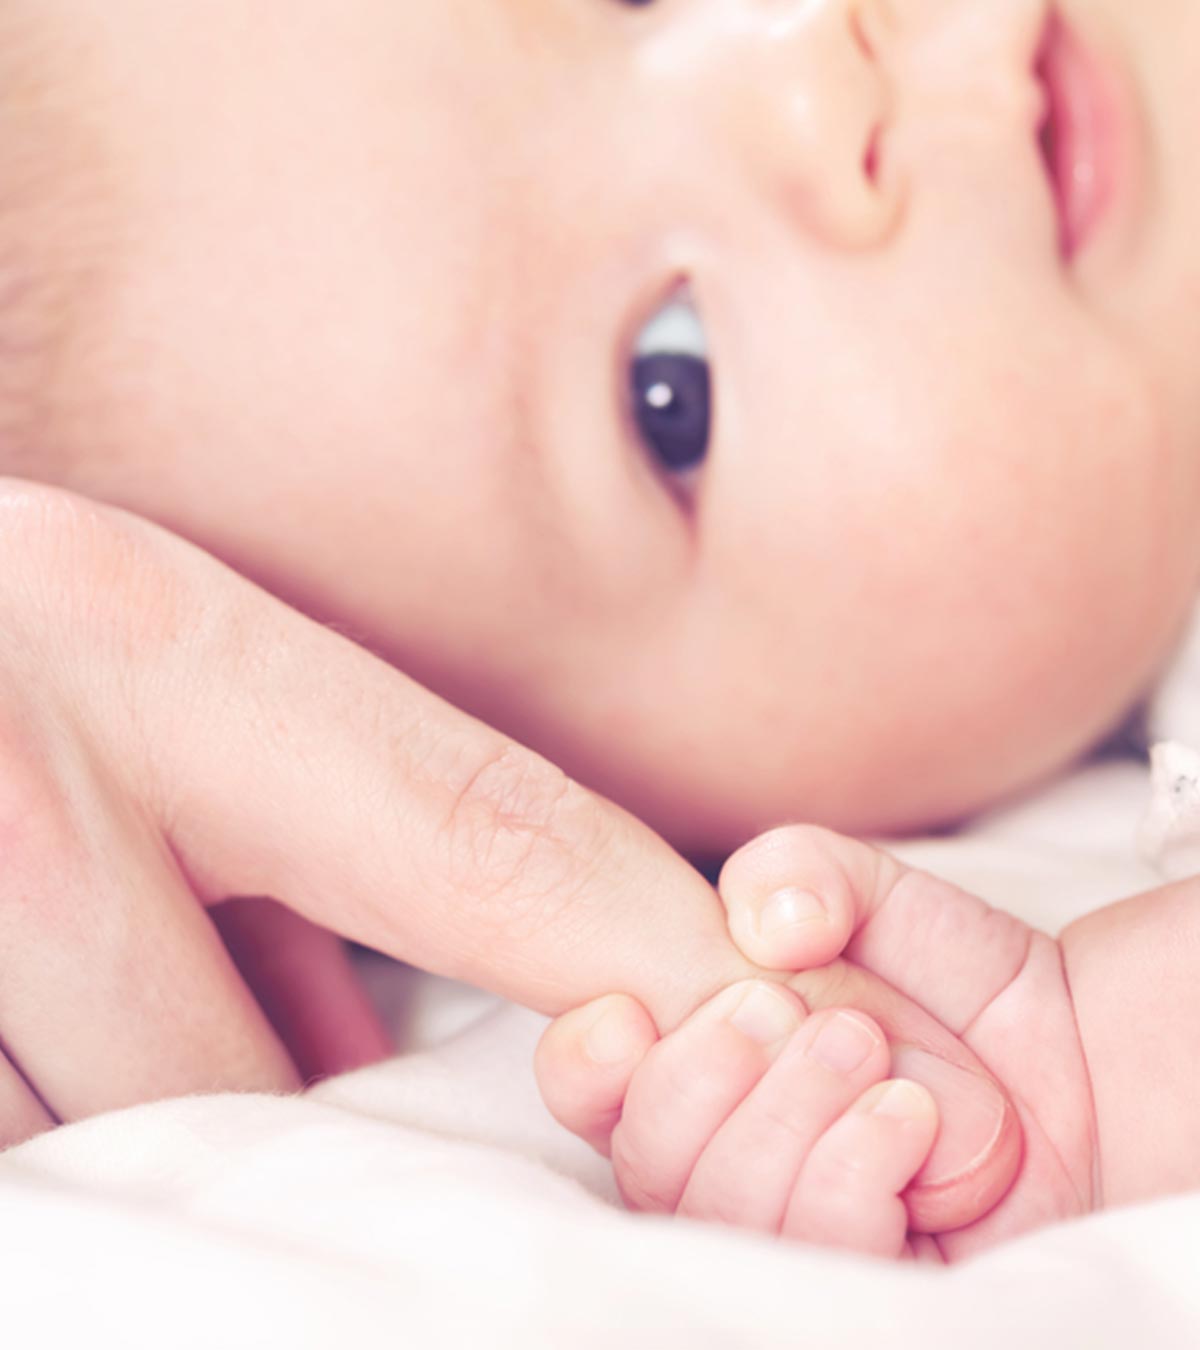 婴儿的抓握反射:手掌与足底和年龄范围